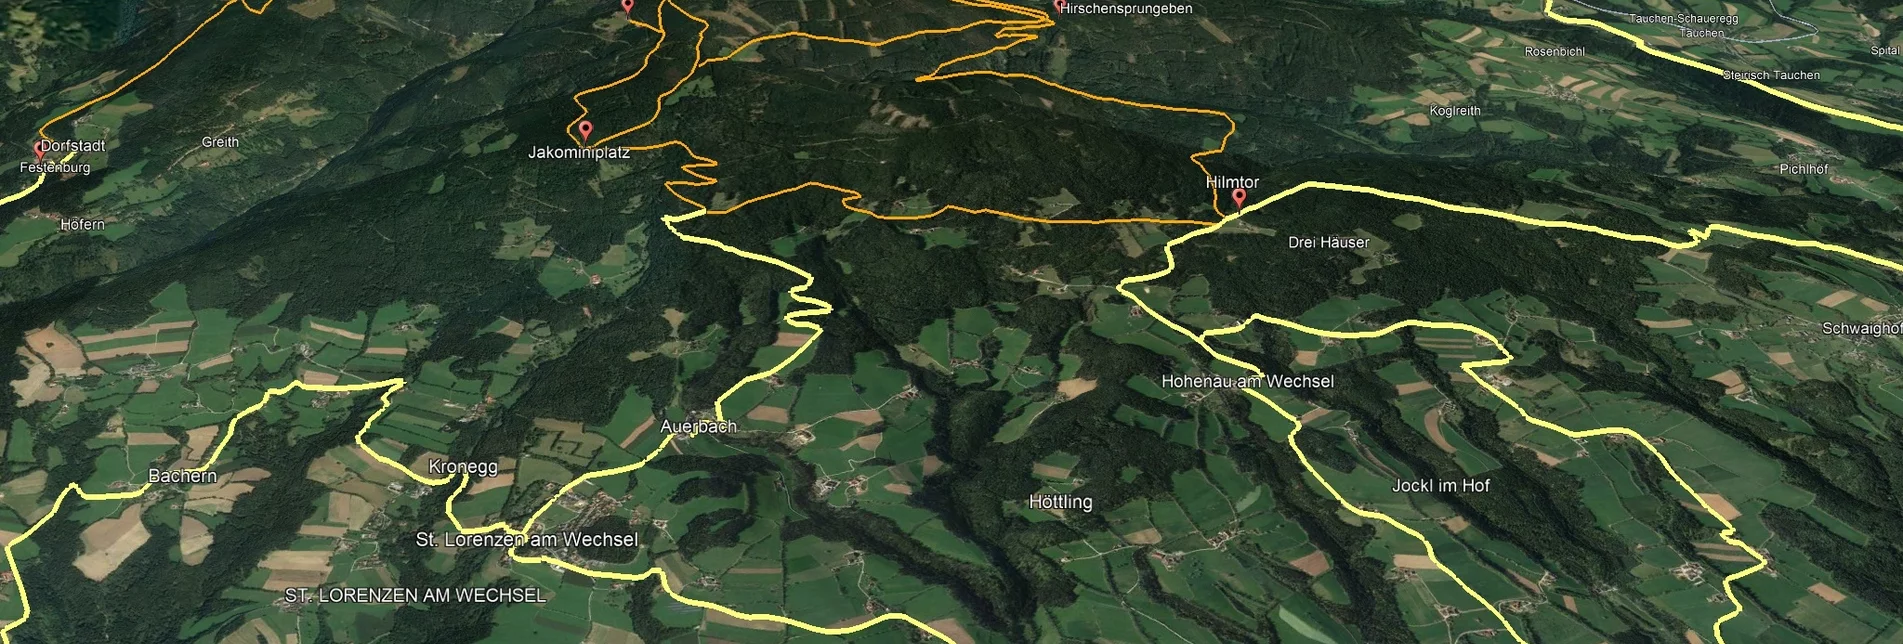 Mountainbike Steirische Wexl Trails - Irrbühel Route - Touren-Impression #1 | © Verein Tourismusentwicklung Steirischer Wechsel